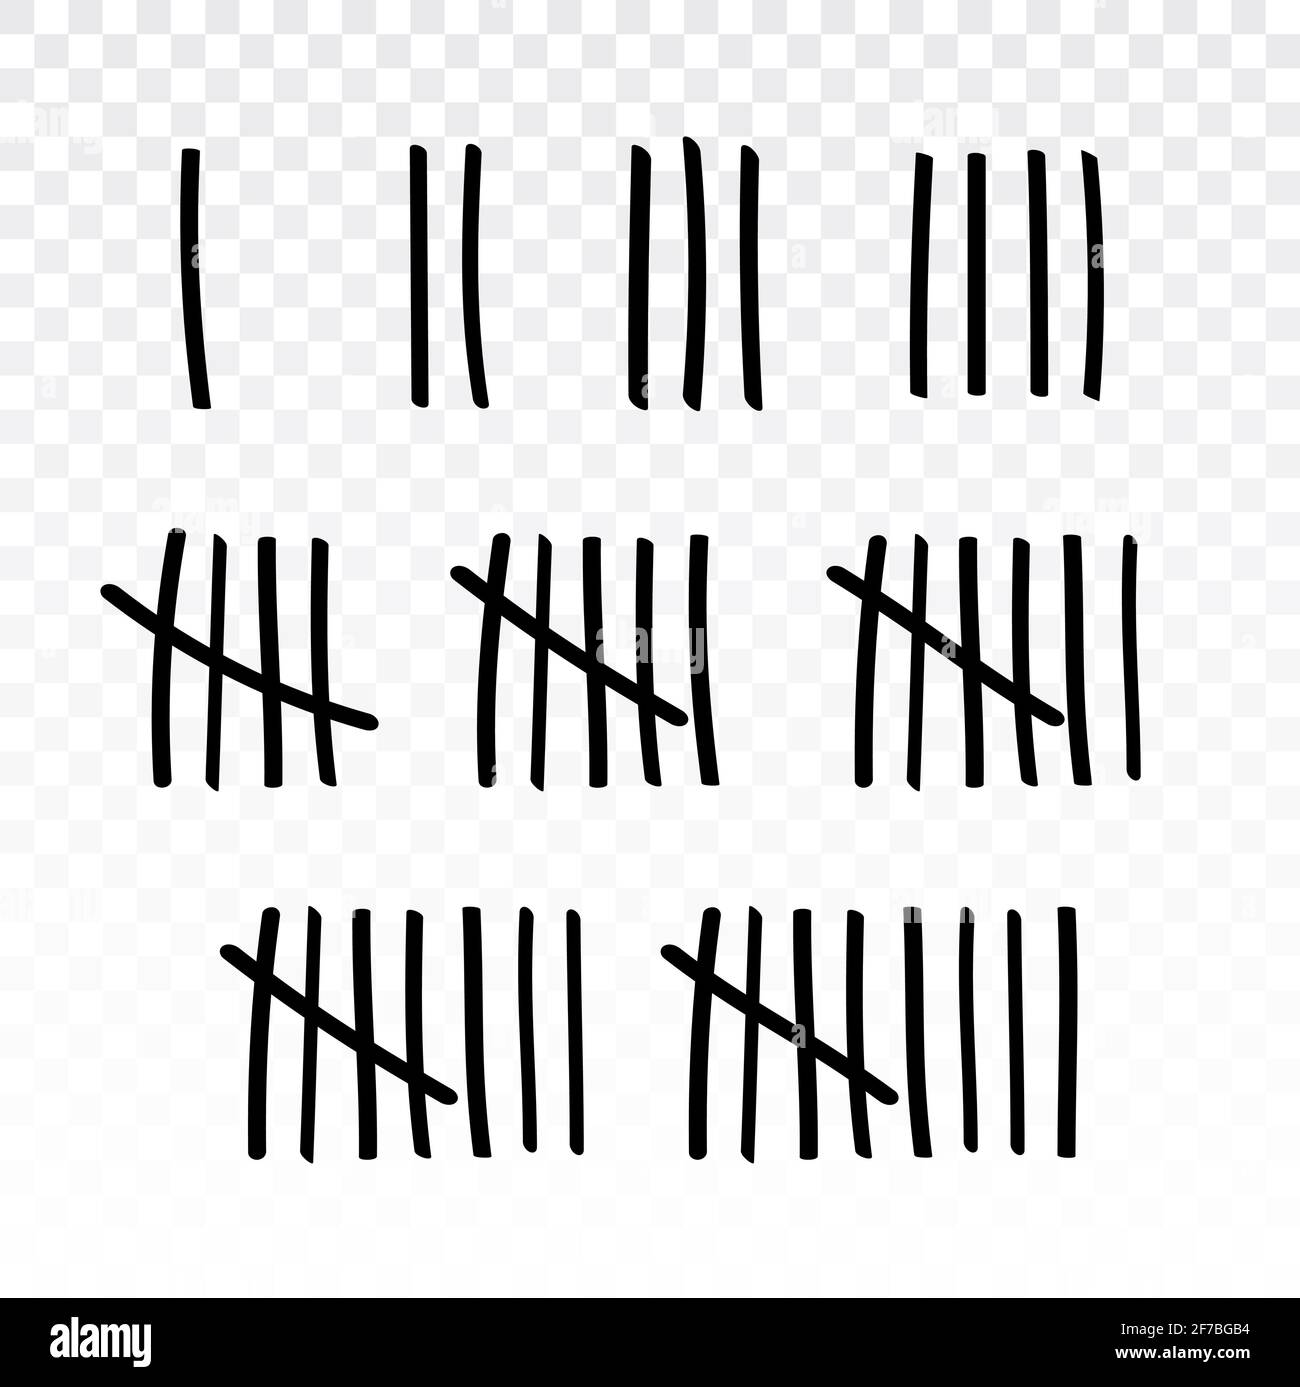 Le calcul marque le nombre de parois du vecteur de prison. Barre oblique dièse numéro de la ligne de la forme marque tally mur de prison Illustration de Vecteur